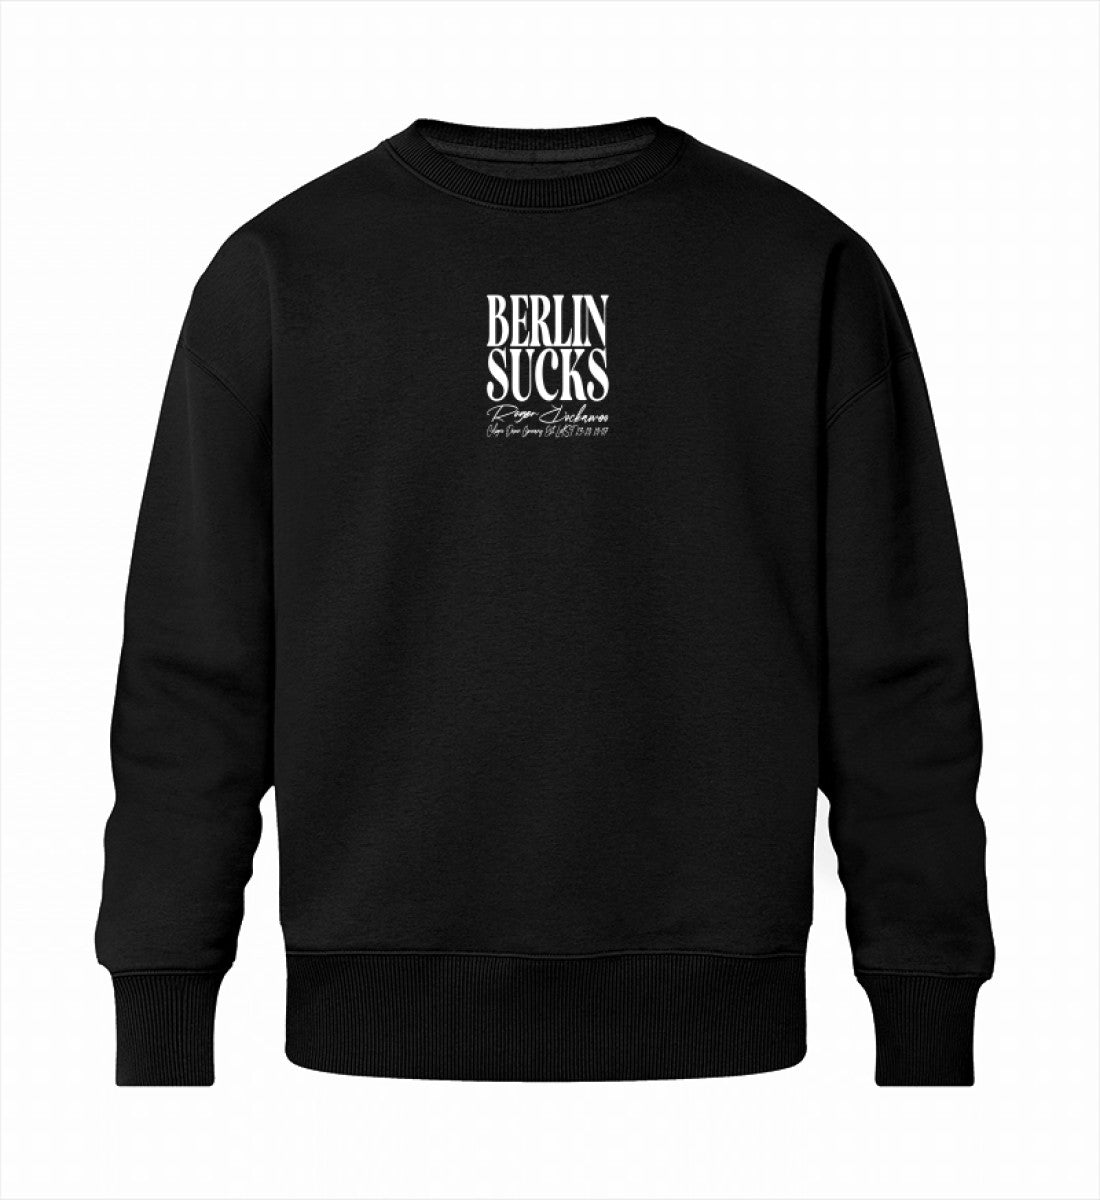 Schwarzes Sweatshirt Unisex in Relaxed Fit vorne bedruckt mit dem Design und Logo Schriftzug der Berlin sucks Kollektion von Roger Rockawoo